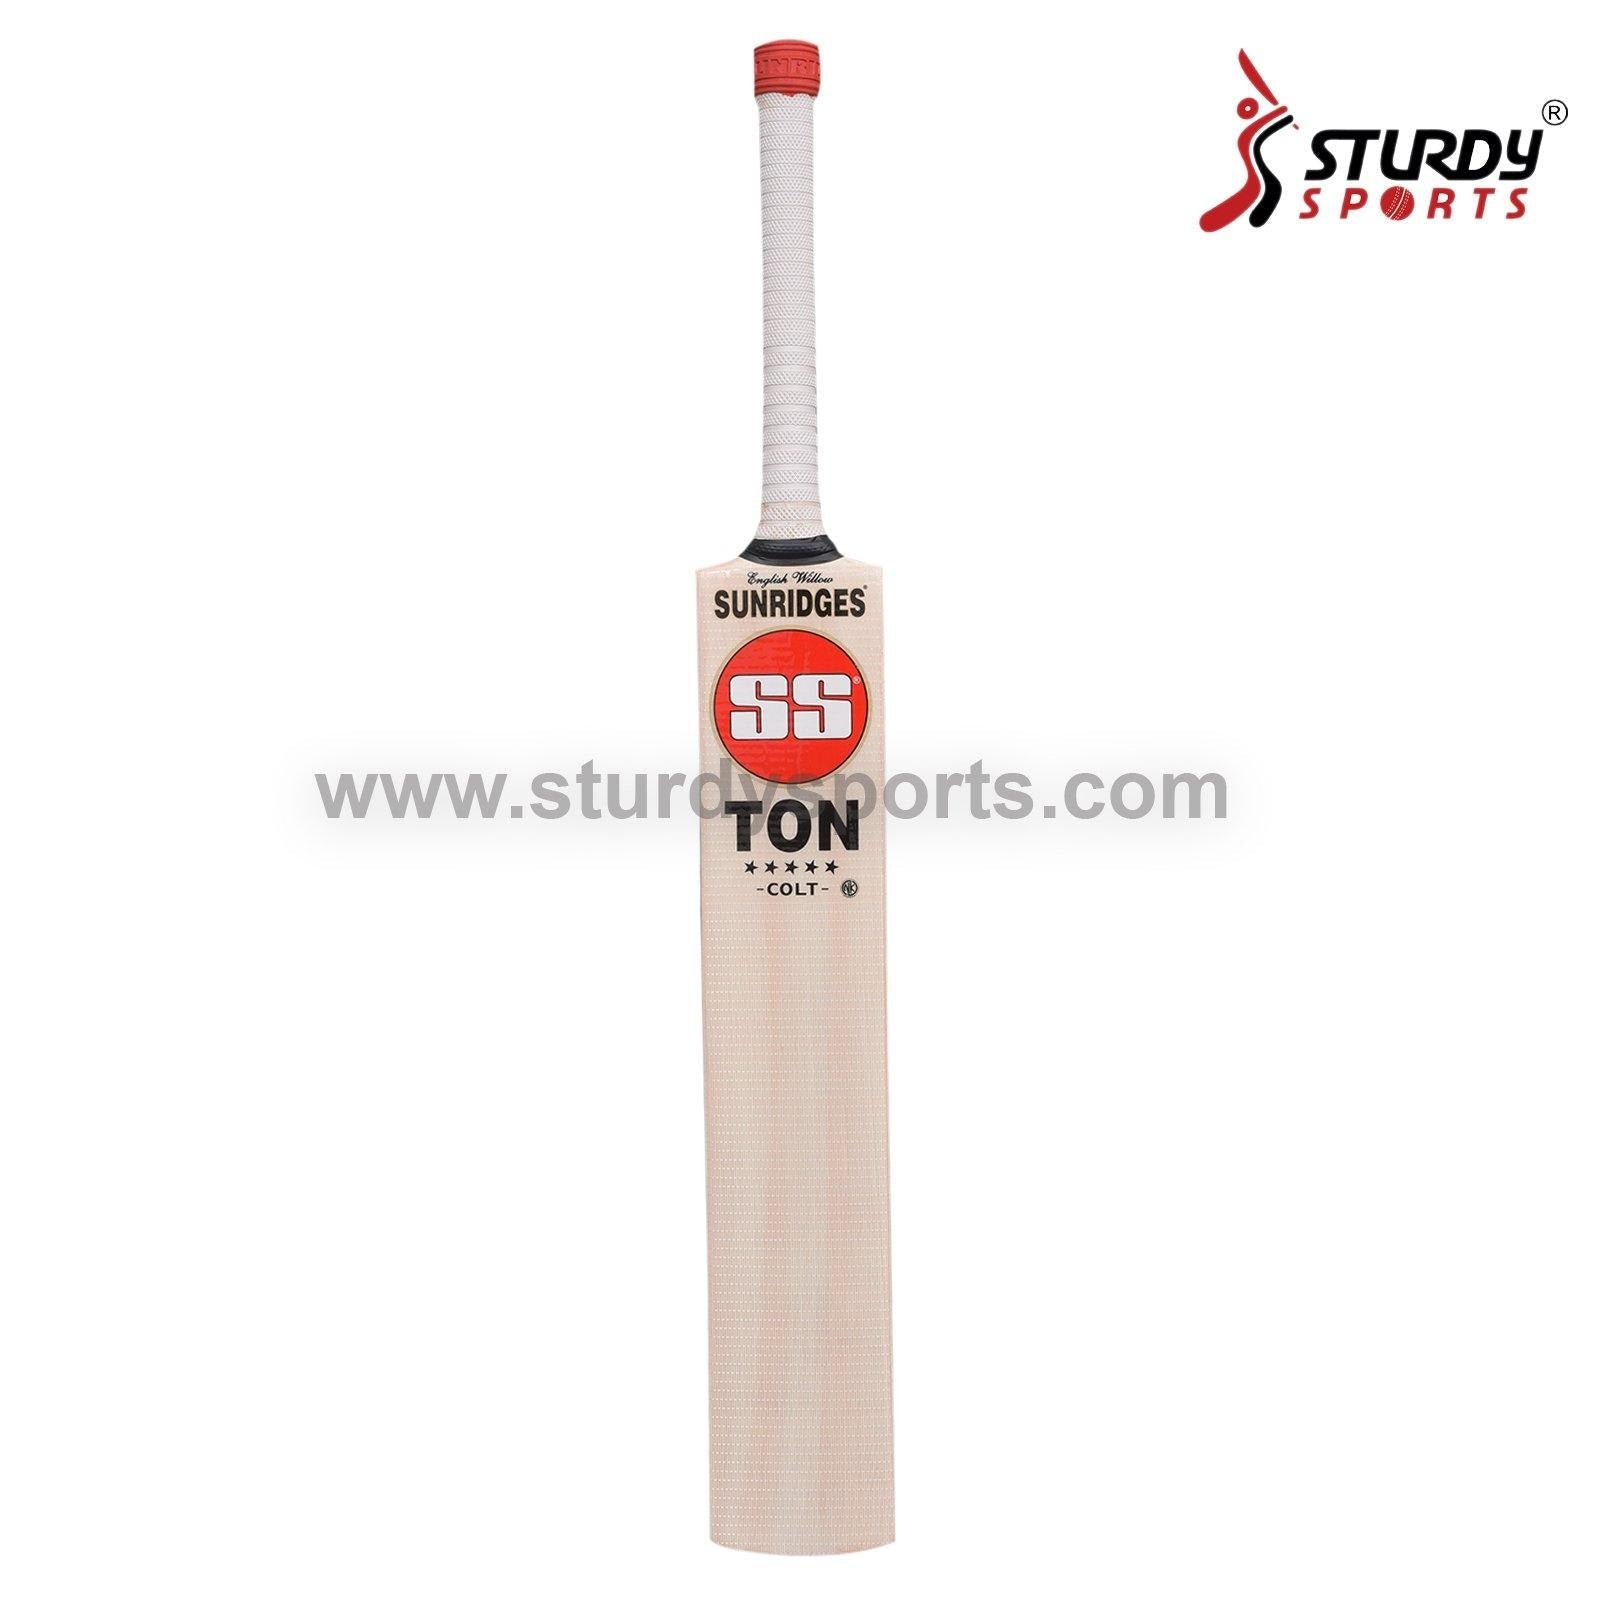 SS Ton Colt Cricket Bat - Size 1